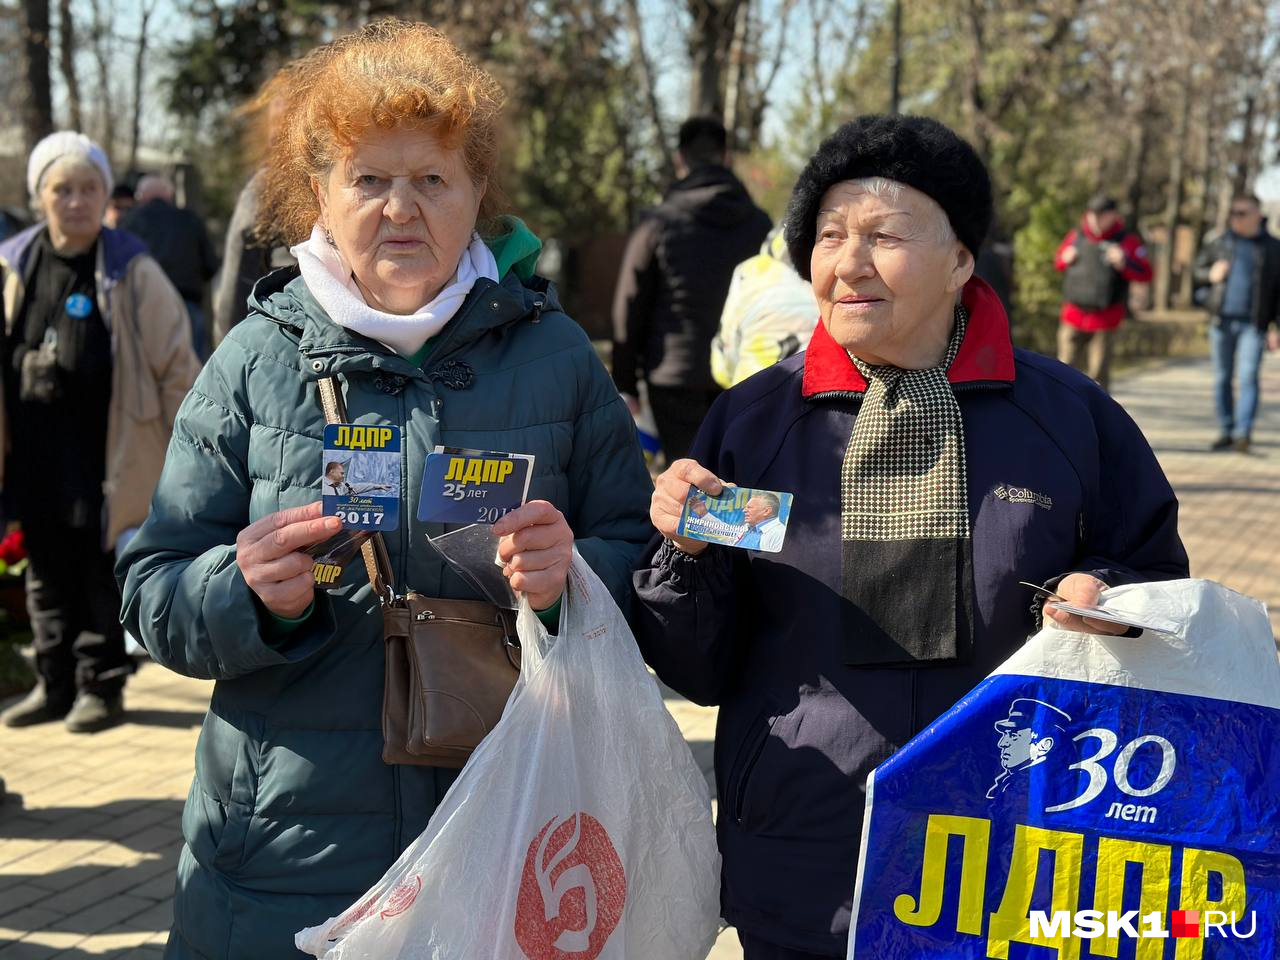 Галина Степановна и Валентина Степановна принесли с собой сувениры, связанные с политиком